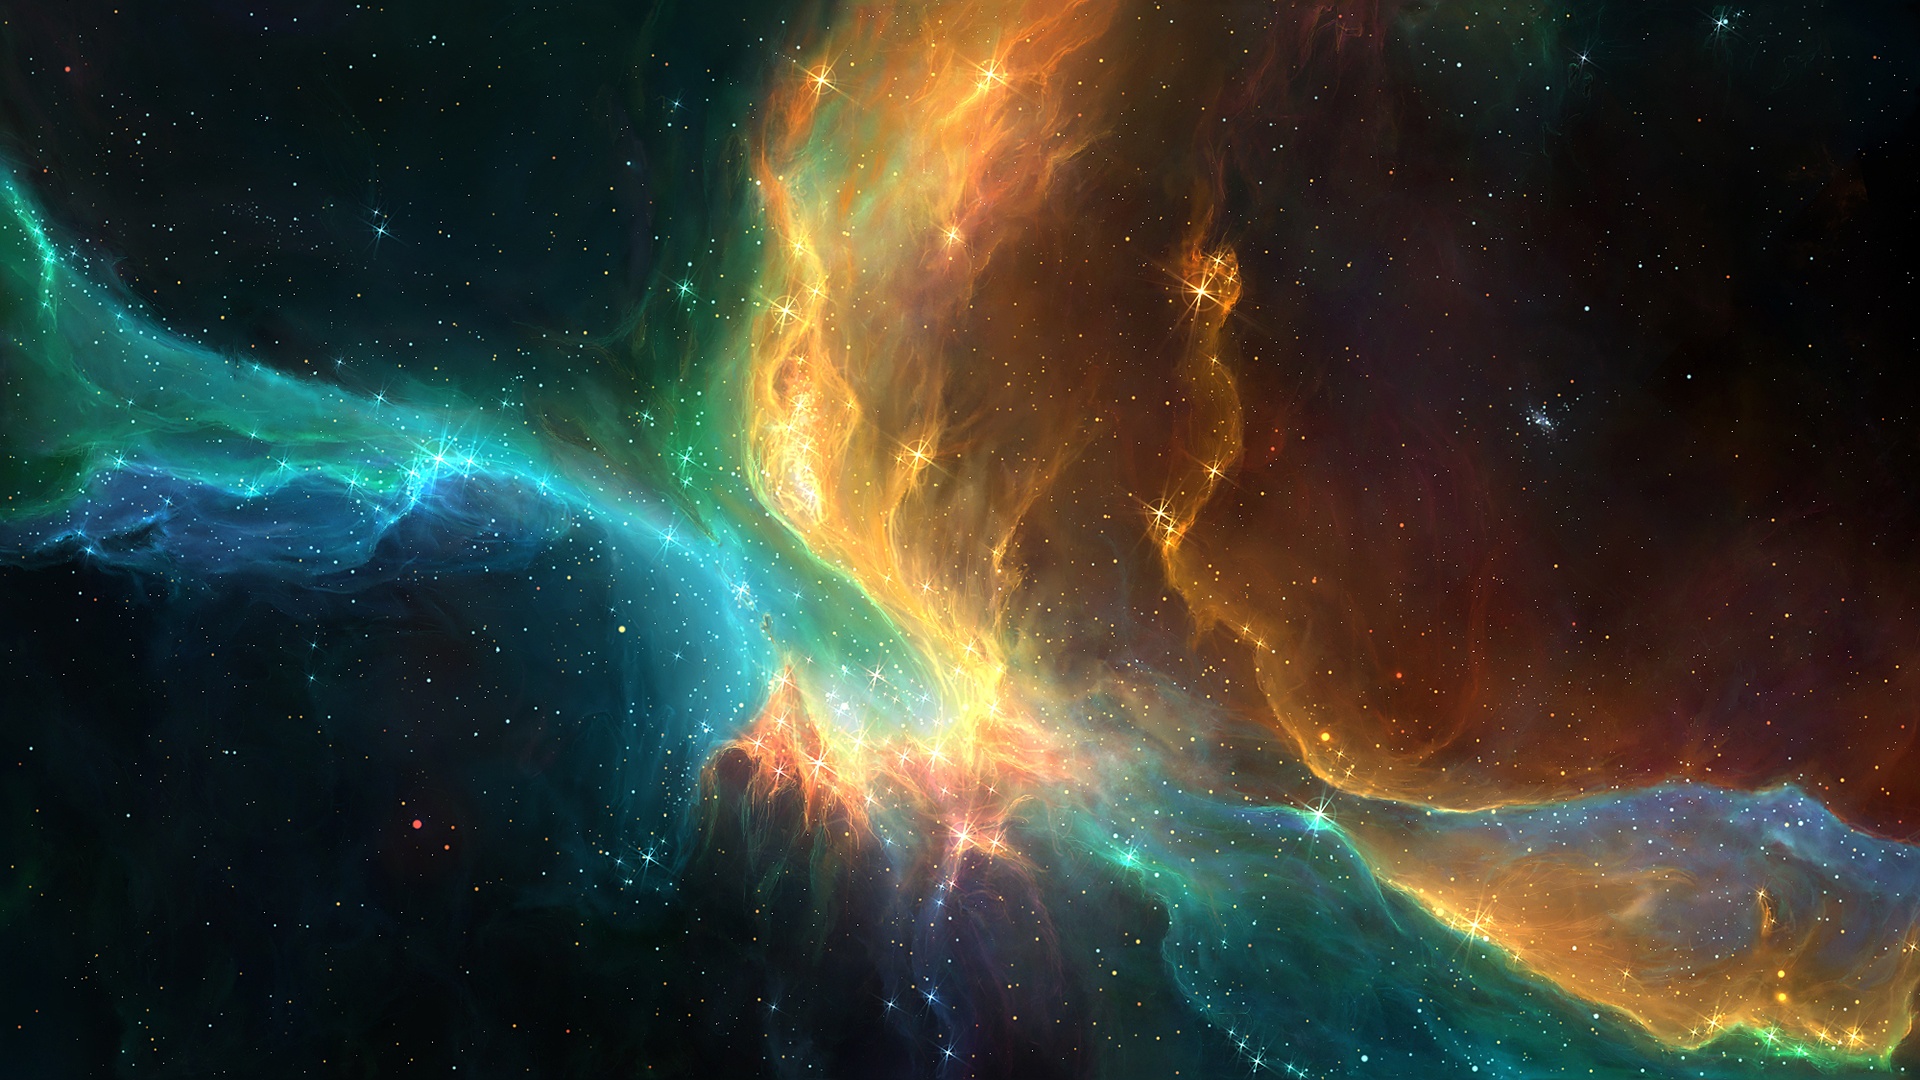 nebula wallpaper hd 1366x768